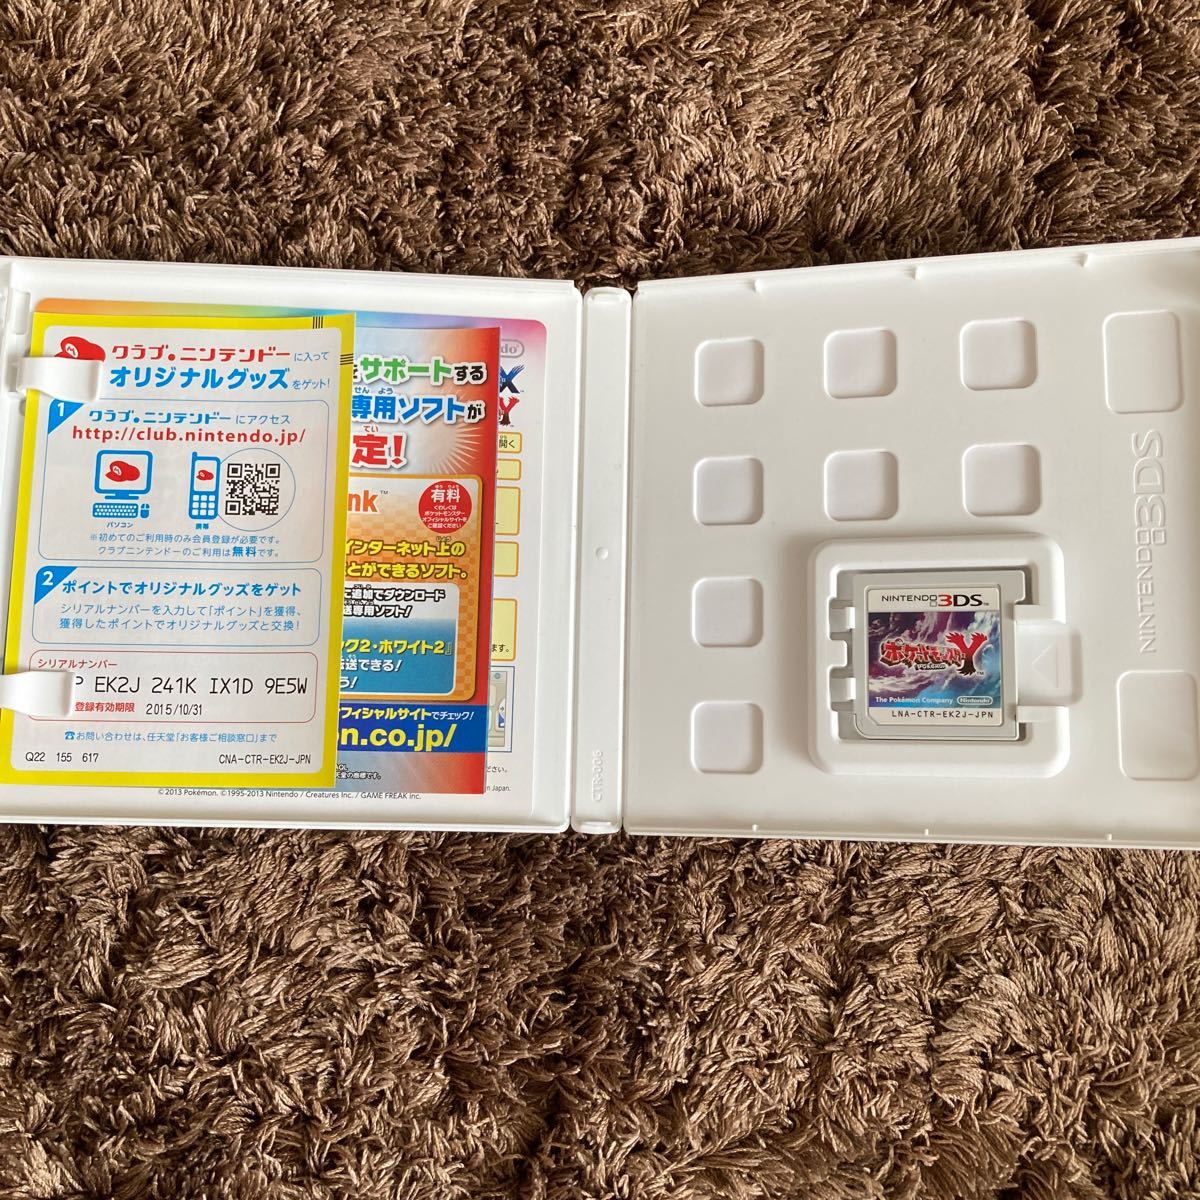 ポケットモンスターY ポケットモンスターX ポケモン 3DS Nintendo 任天堂 ニンテンドー 3DSソフト